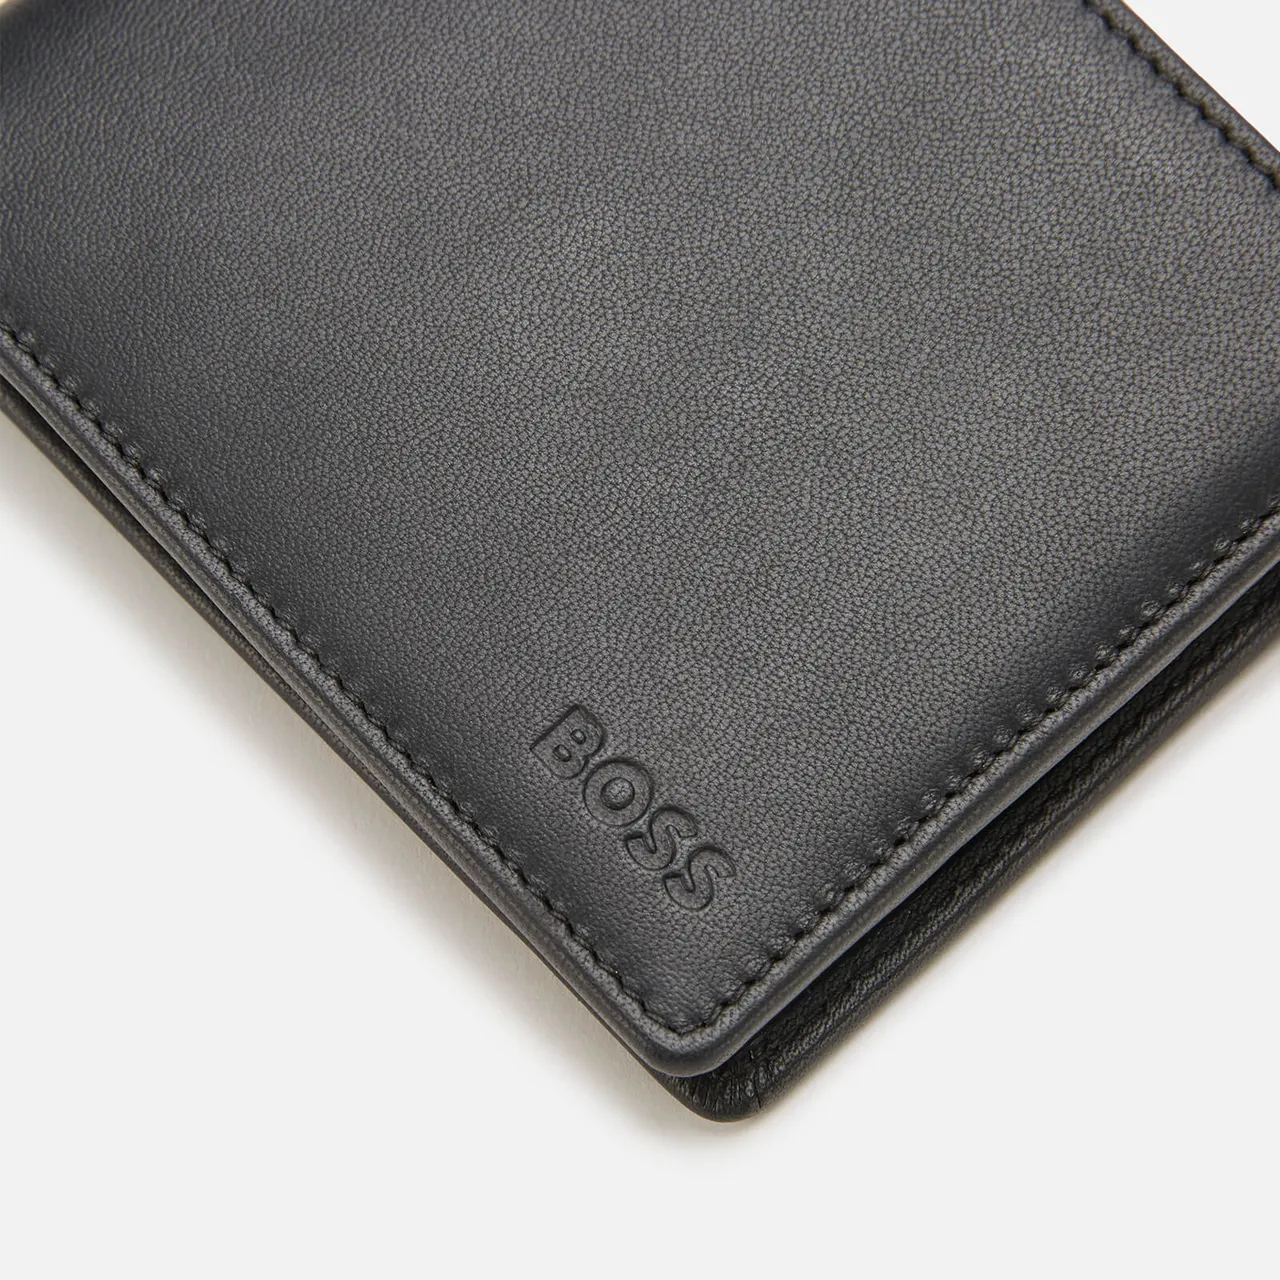 BOSS Men's Asolo Bifold Wallet - Black